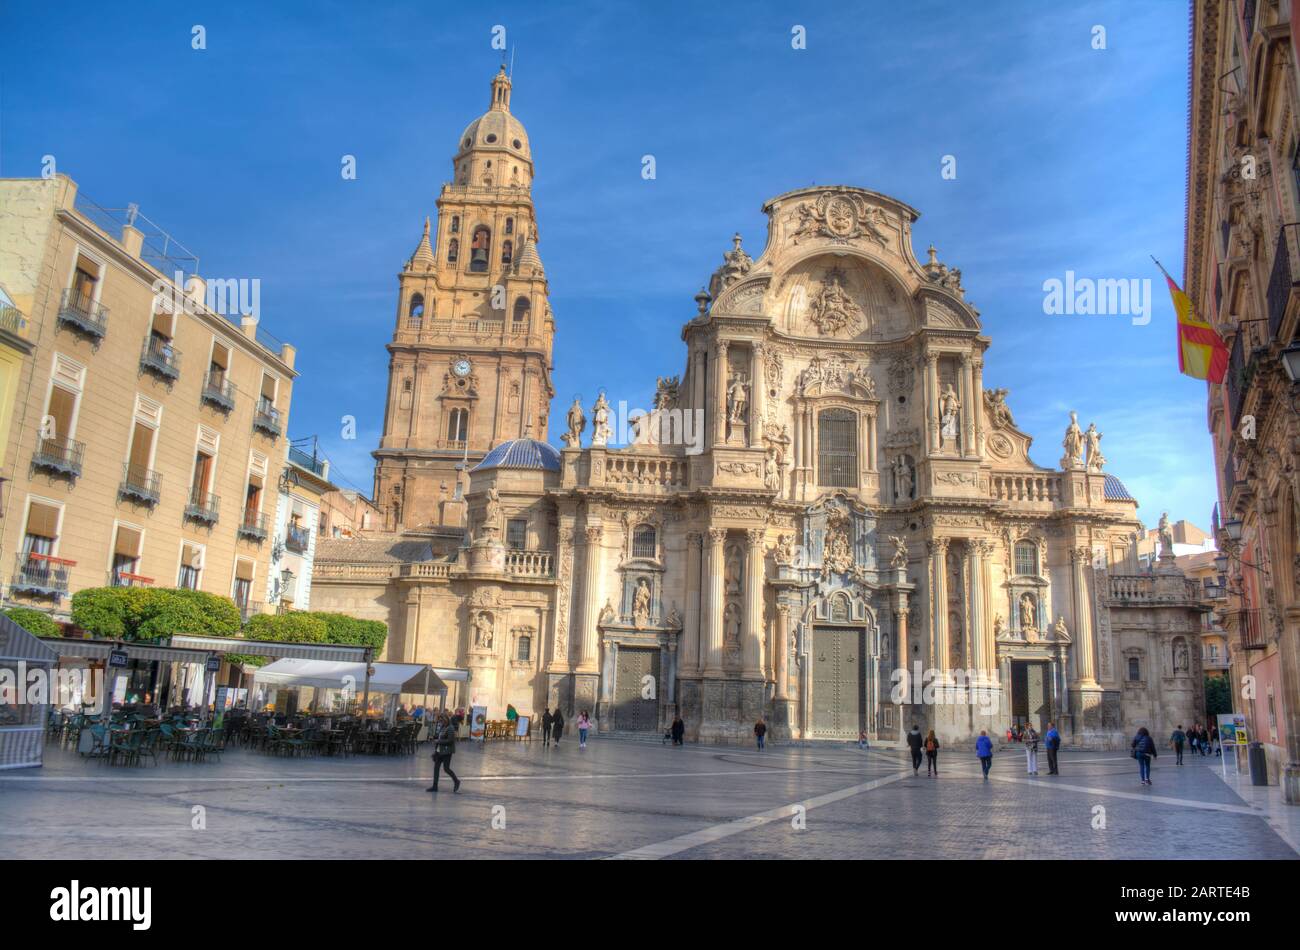 HDR-Bild der Kathedrale von Murcia und der Plaza del Cardenal Belluga, Murcia, Spanien Stockfoto